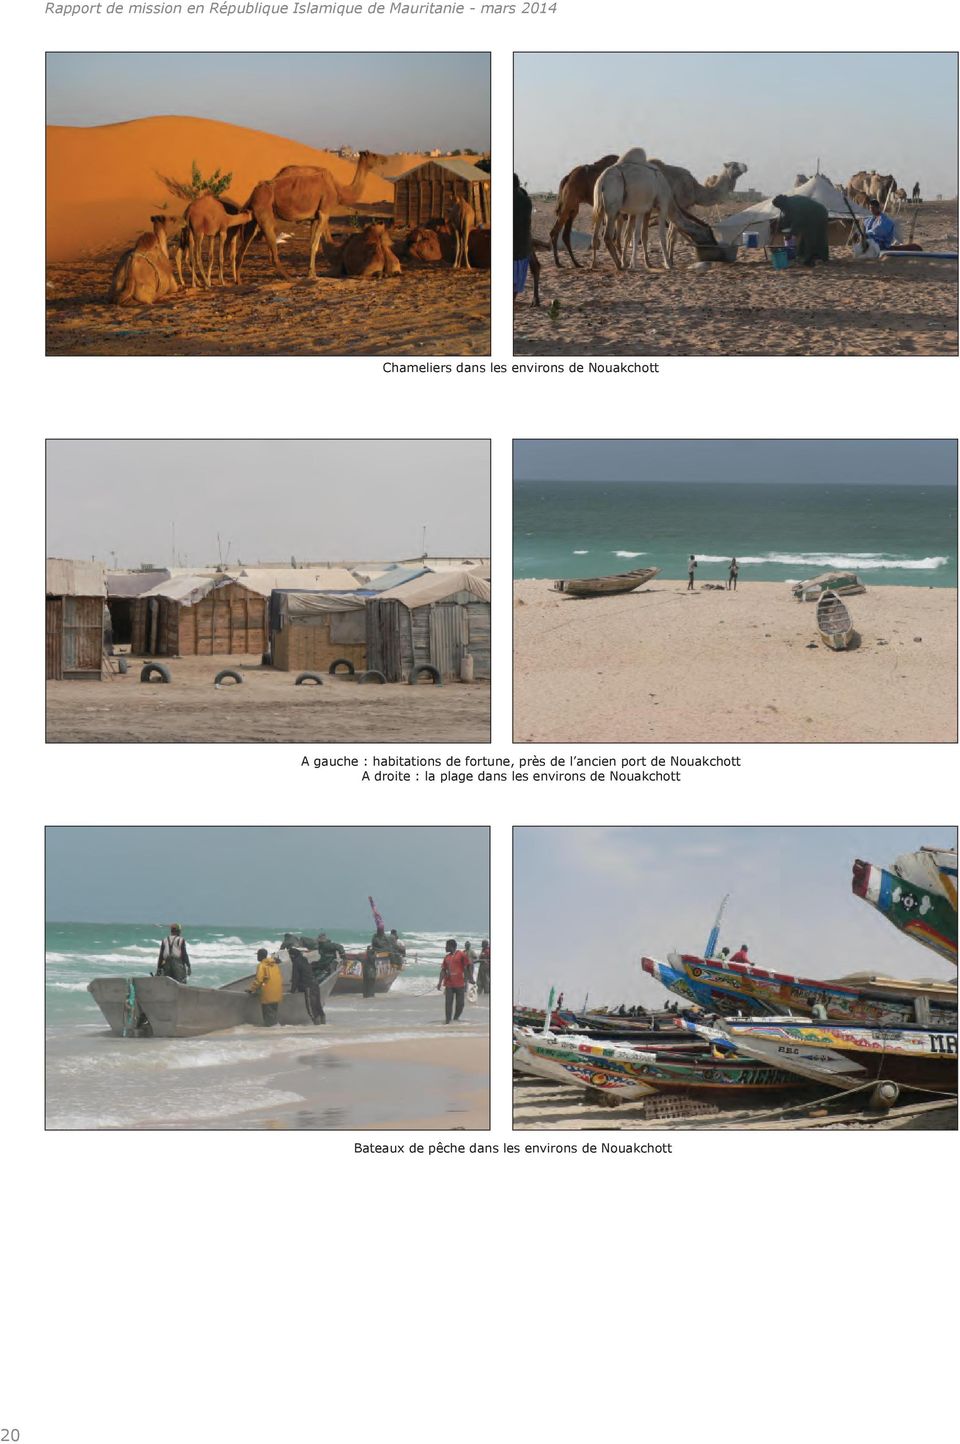 Nouakchott A droite : la plage dans les environs de